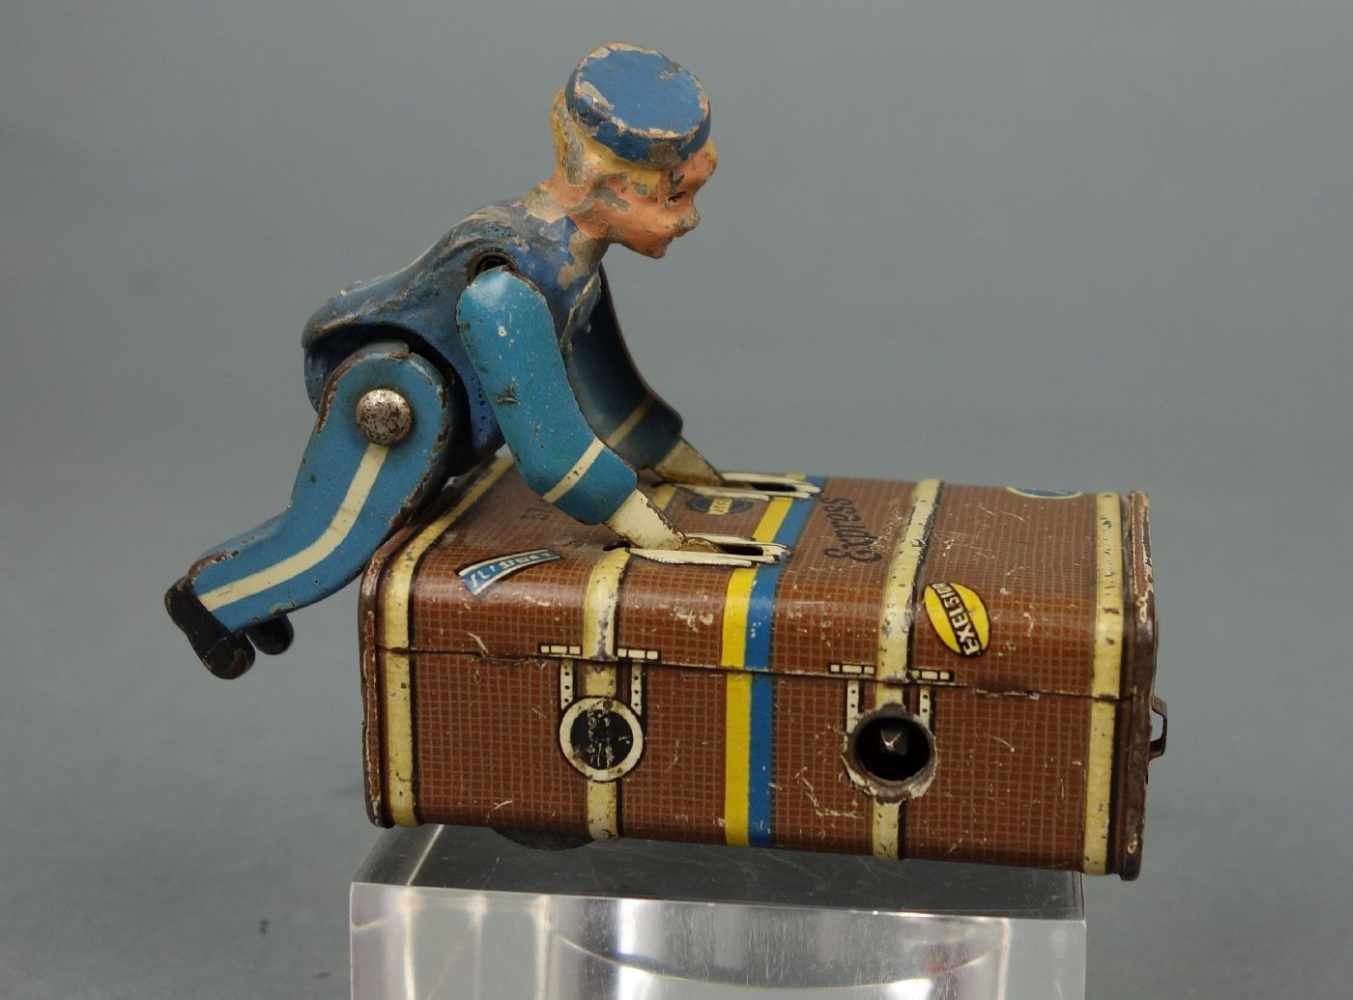 BLECHSPIELZEUG / tin toy: "Gescha Express Koffer Boy", Nr. 57-1, Firma Schmidt, Nürnberg, patentiert - Image 3 of 4